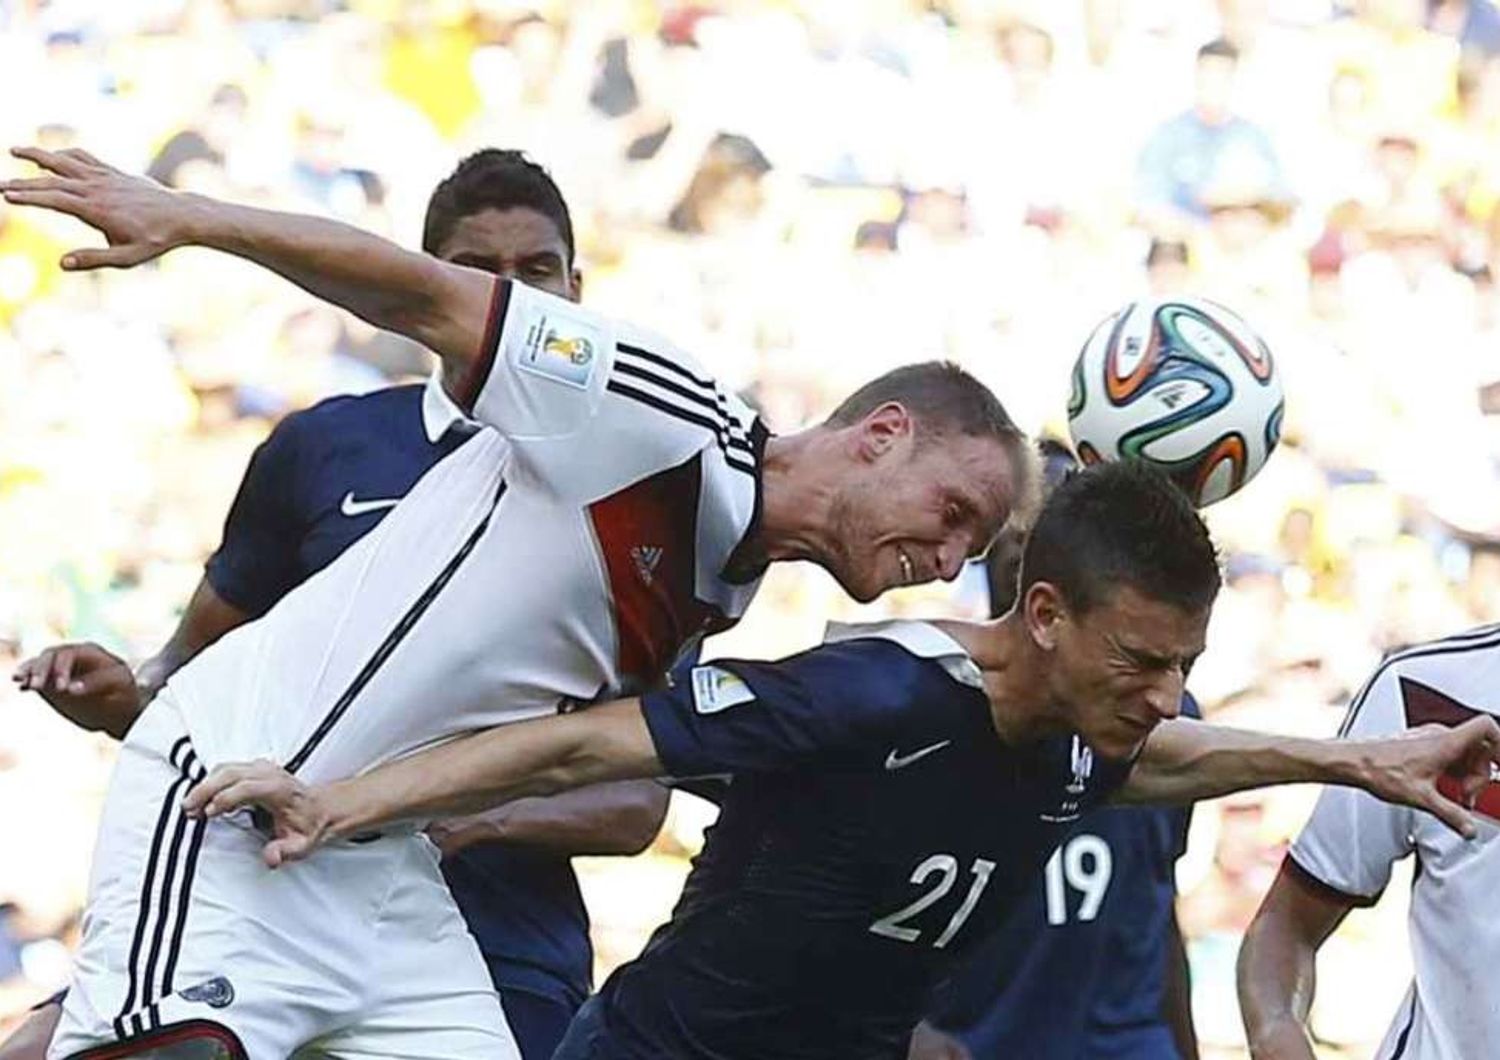 Germania e Brasile in semifinale Lacrime per Francia e Colombia